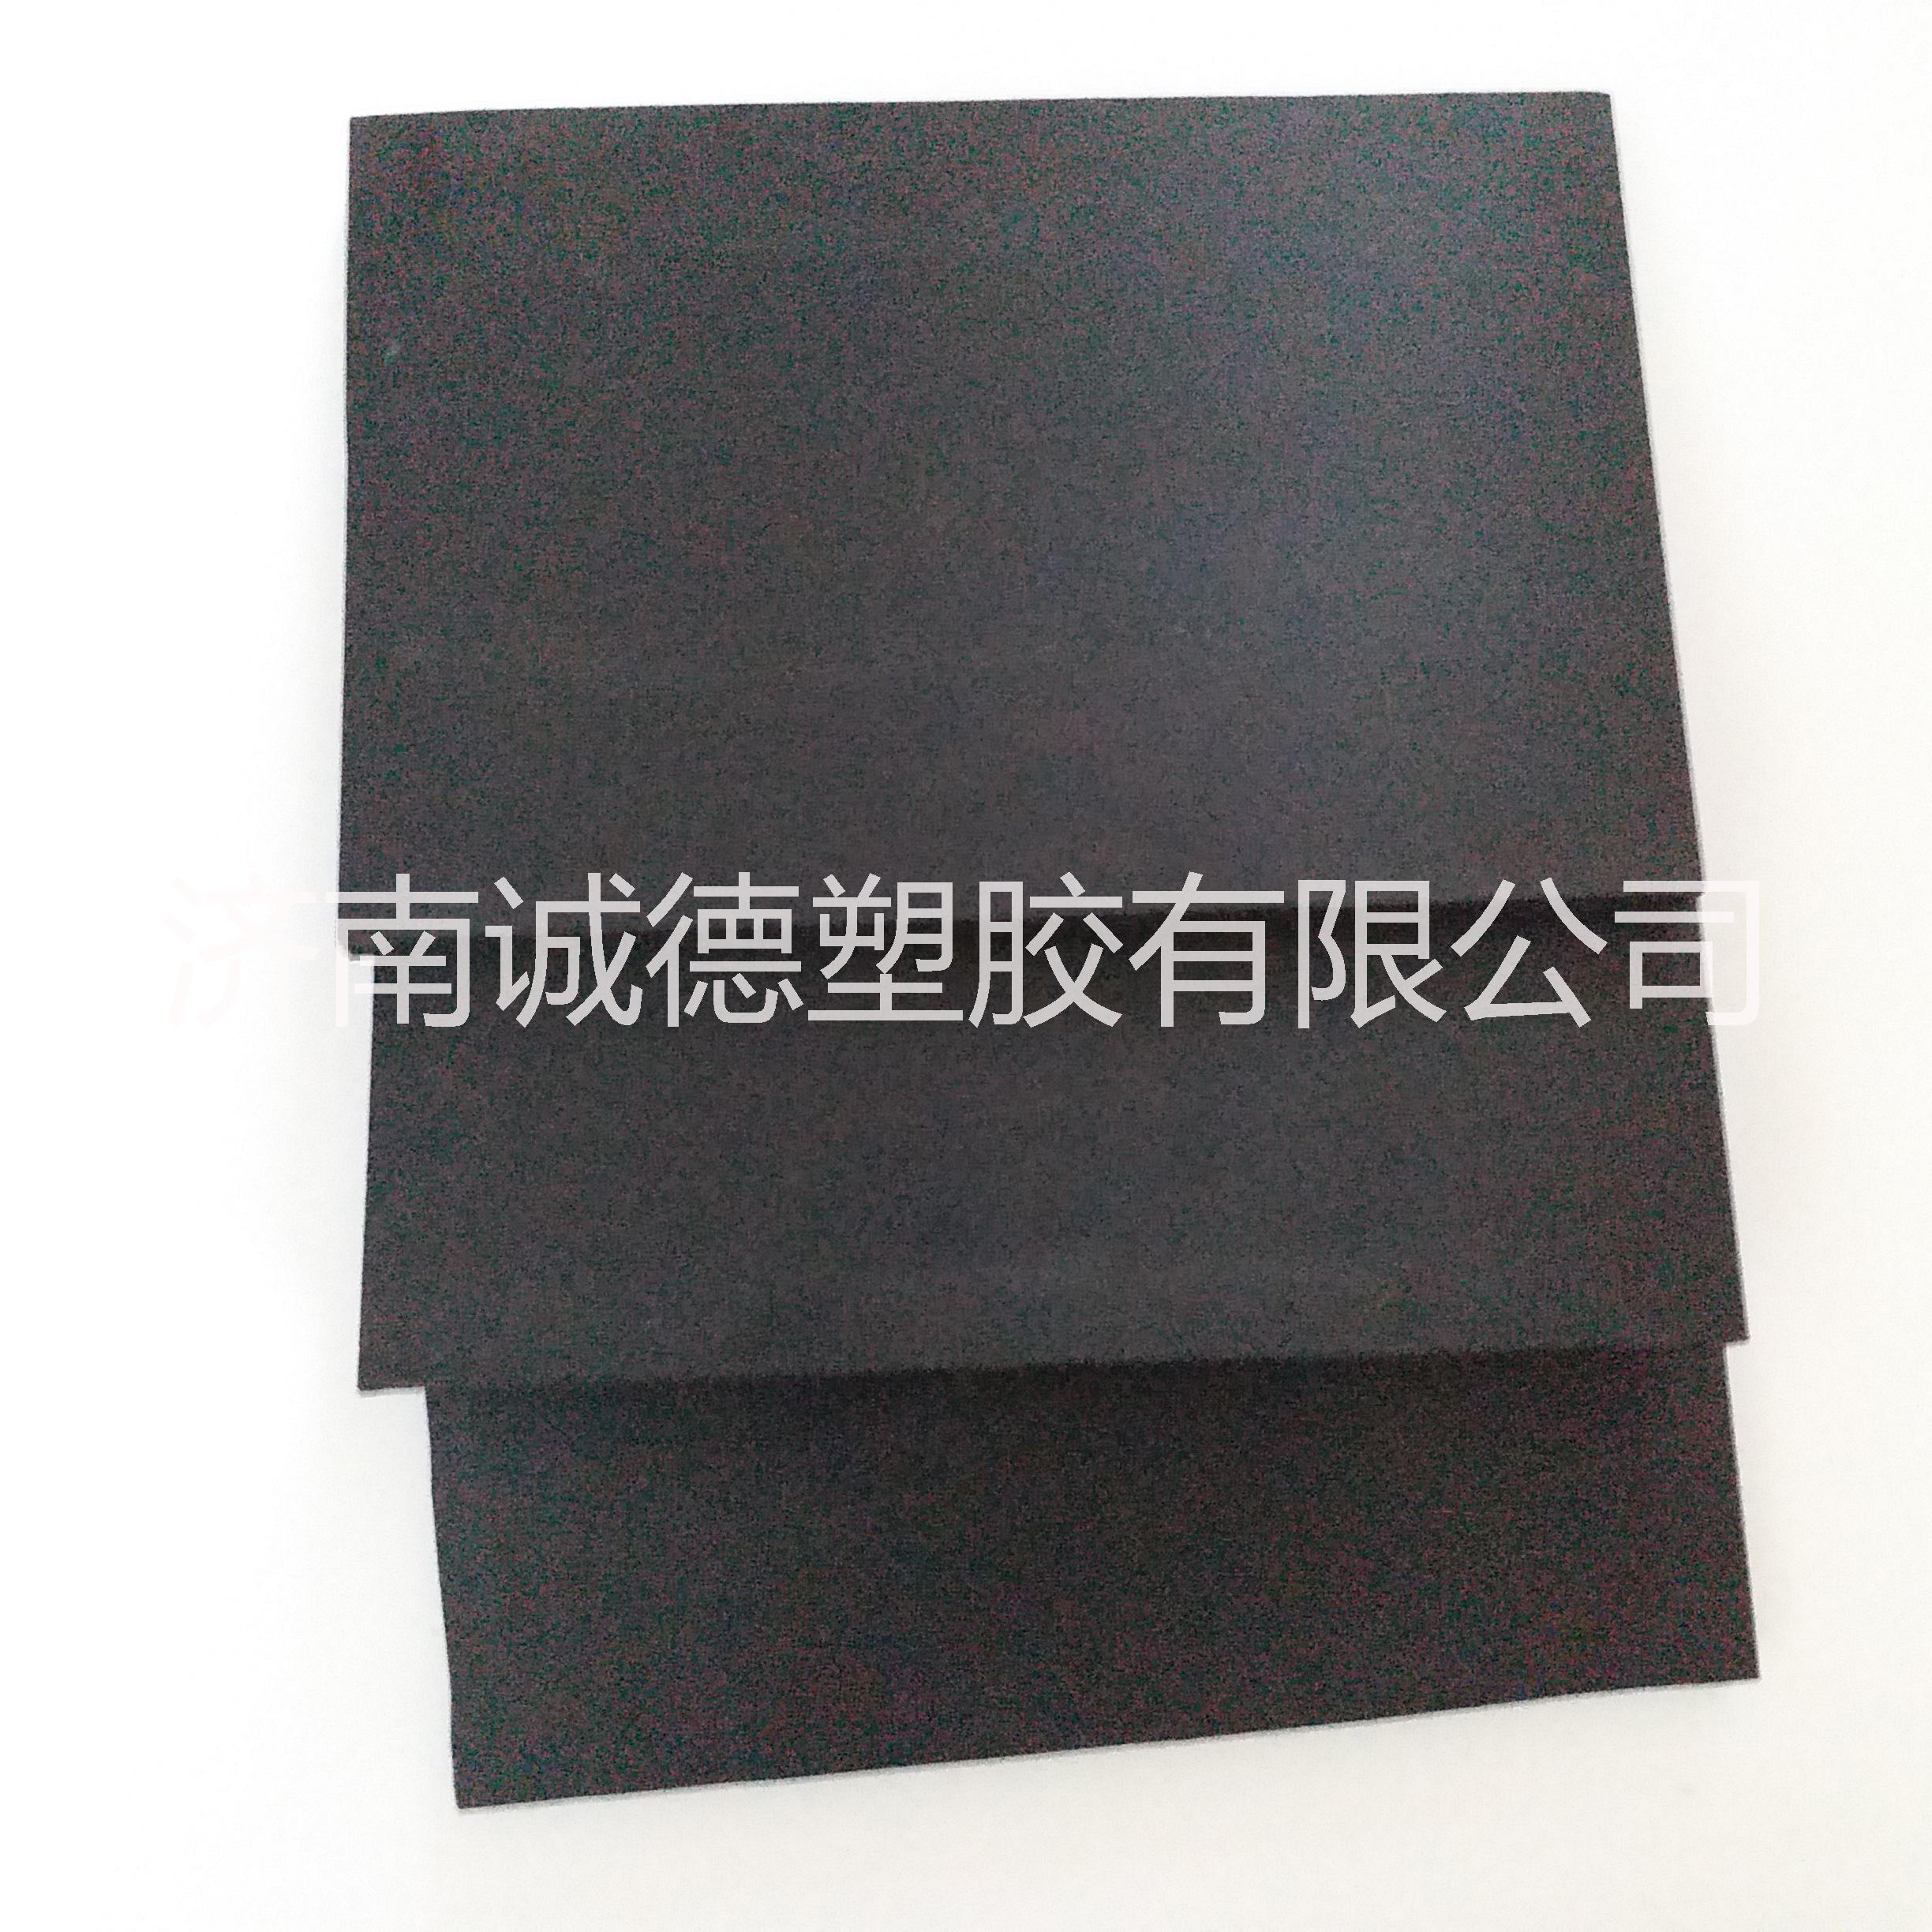 济南市黑色PVC结皮发泡板厂家厂家生产销售高密度黑色PVC结皮发泡板特殊尺寸可定做